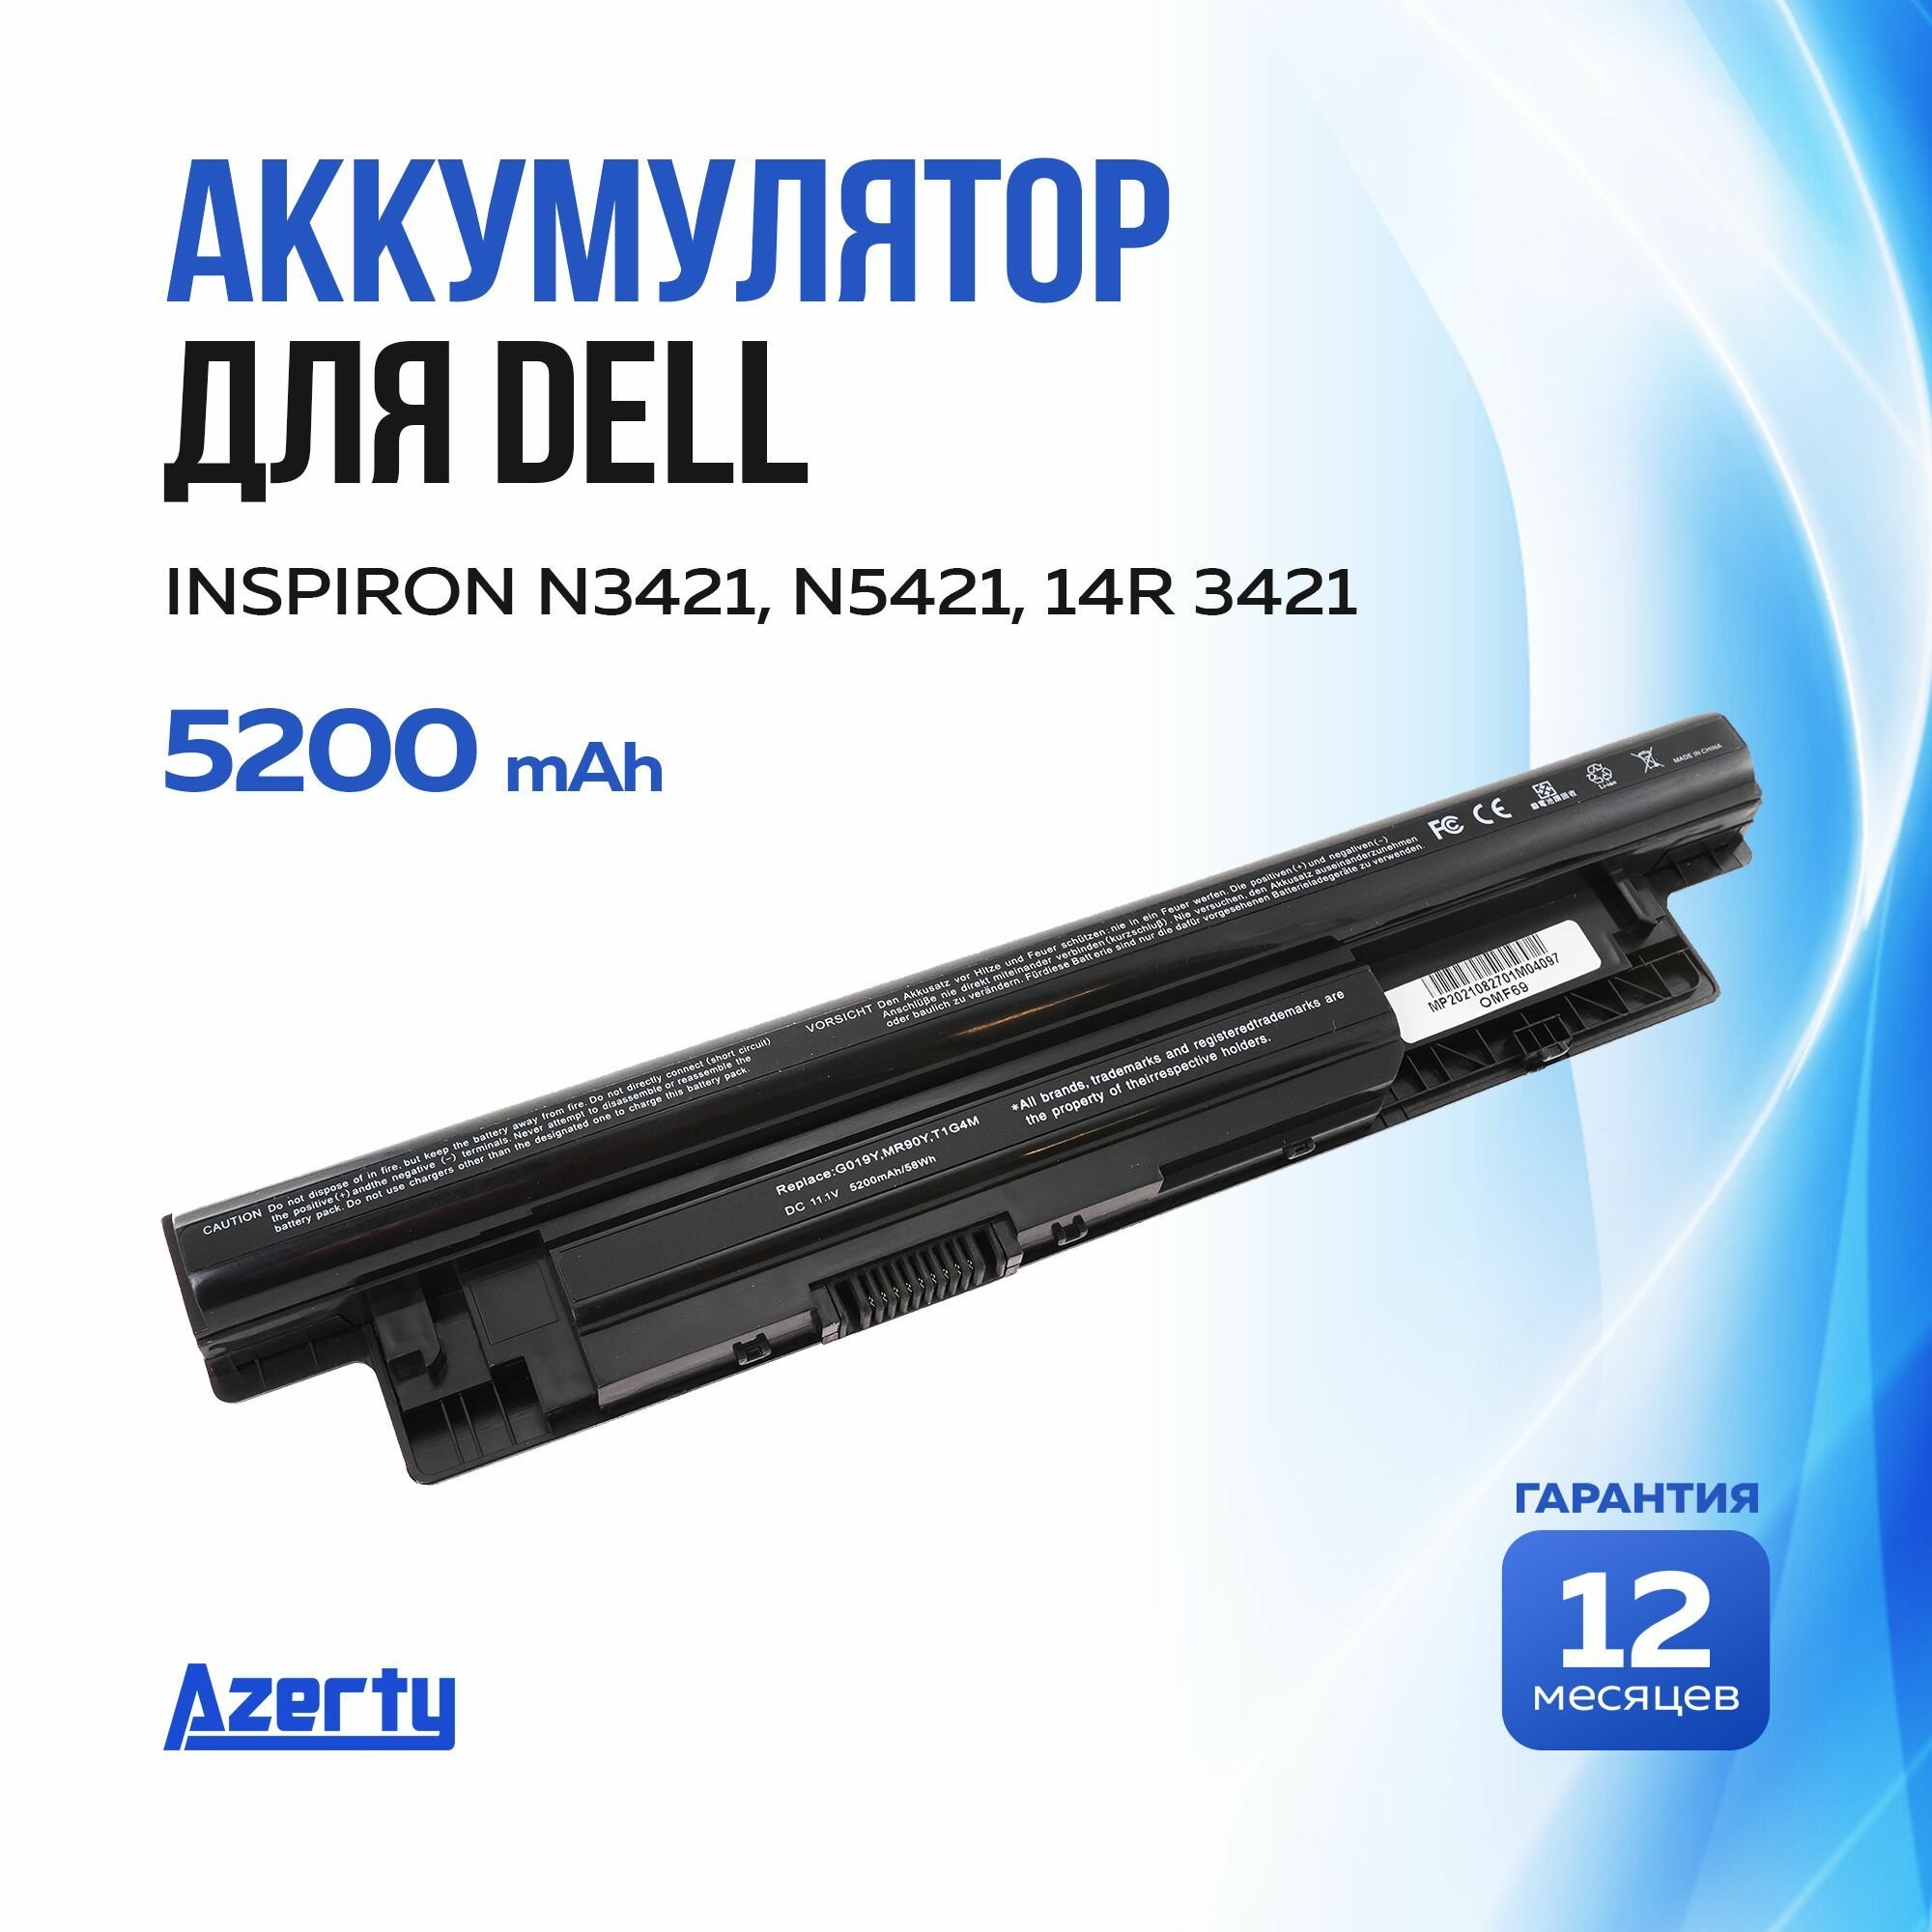 Аккумулятор MR90Y для Dell Inspiron 14 3421 / N3421 / 14R 3421 / N5421 / 15 3521 / 15R 5521 (6XH00 8TT5W MK1R0) 11.1V 5200mAh